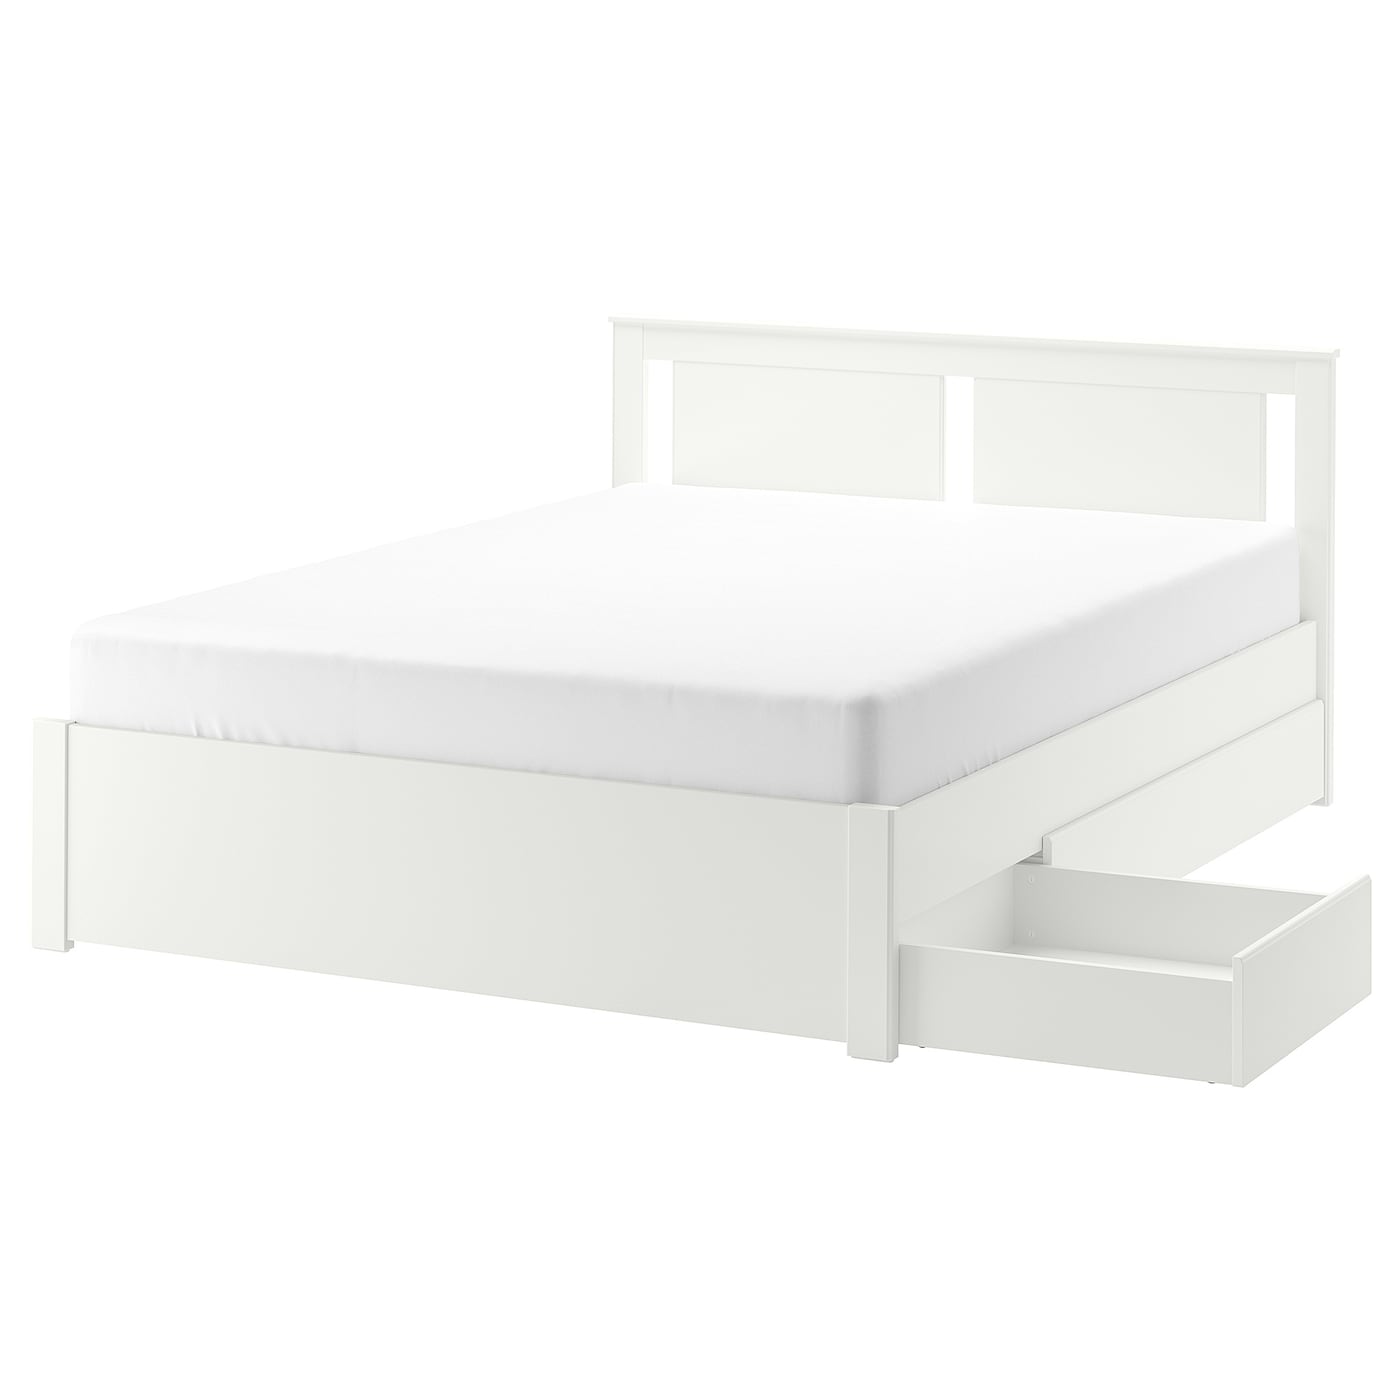 Основание двуспальной кровати - IKEA SONGESAND/LINDBÅDEN/LINDBADEN, 200х160 см, белый, СОНГЕСАНД/ЛИНДБАДЕН ИКЕА